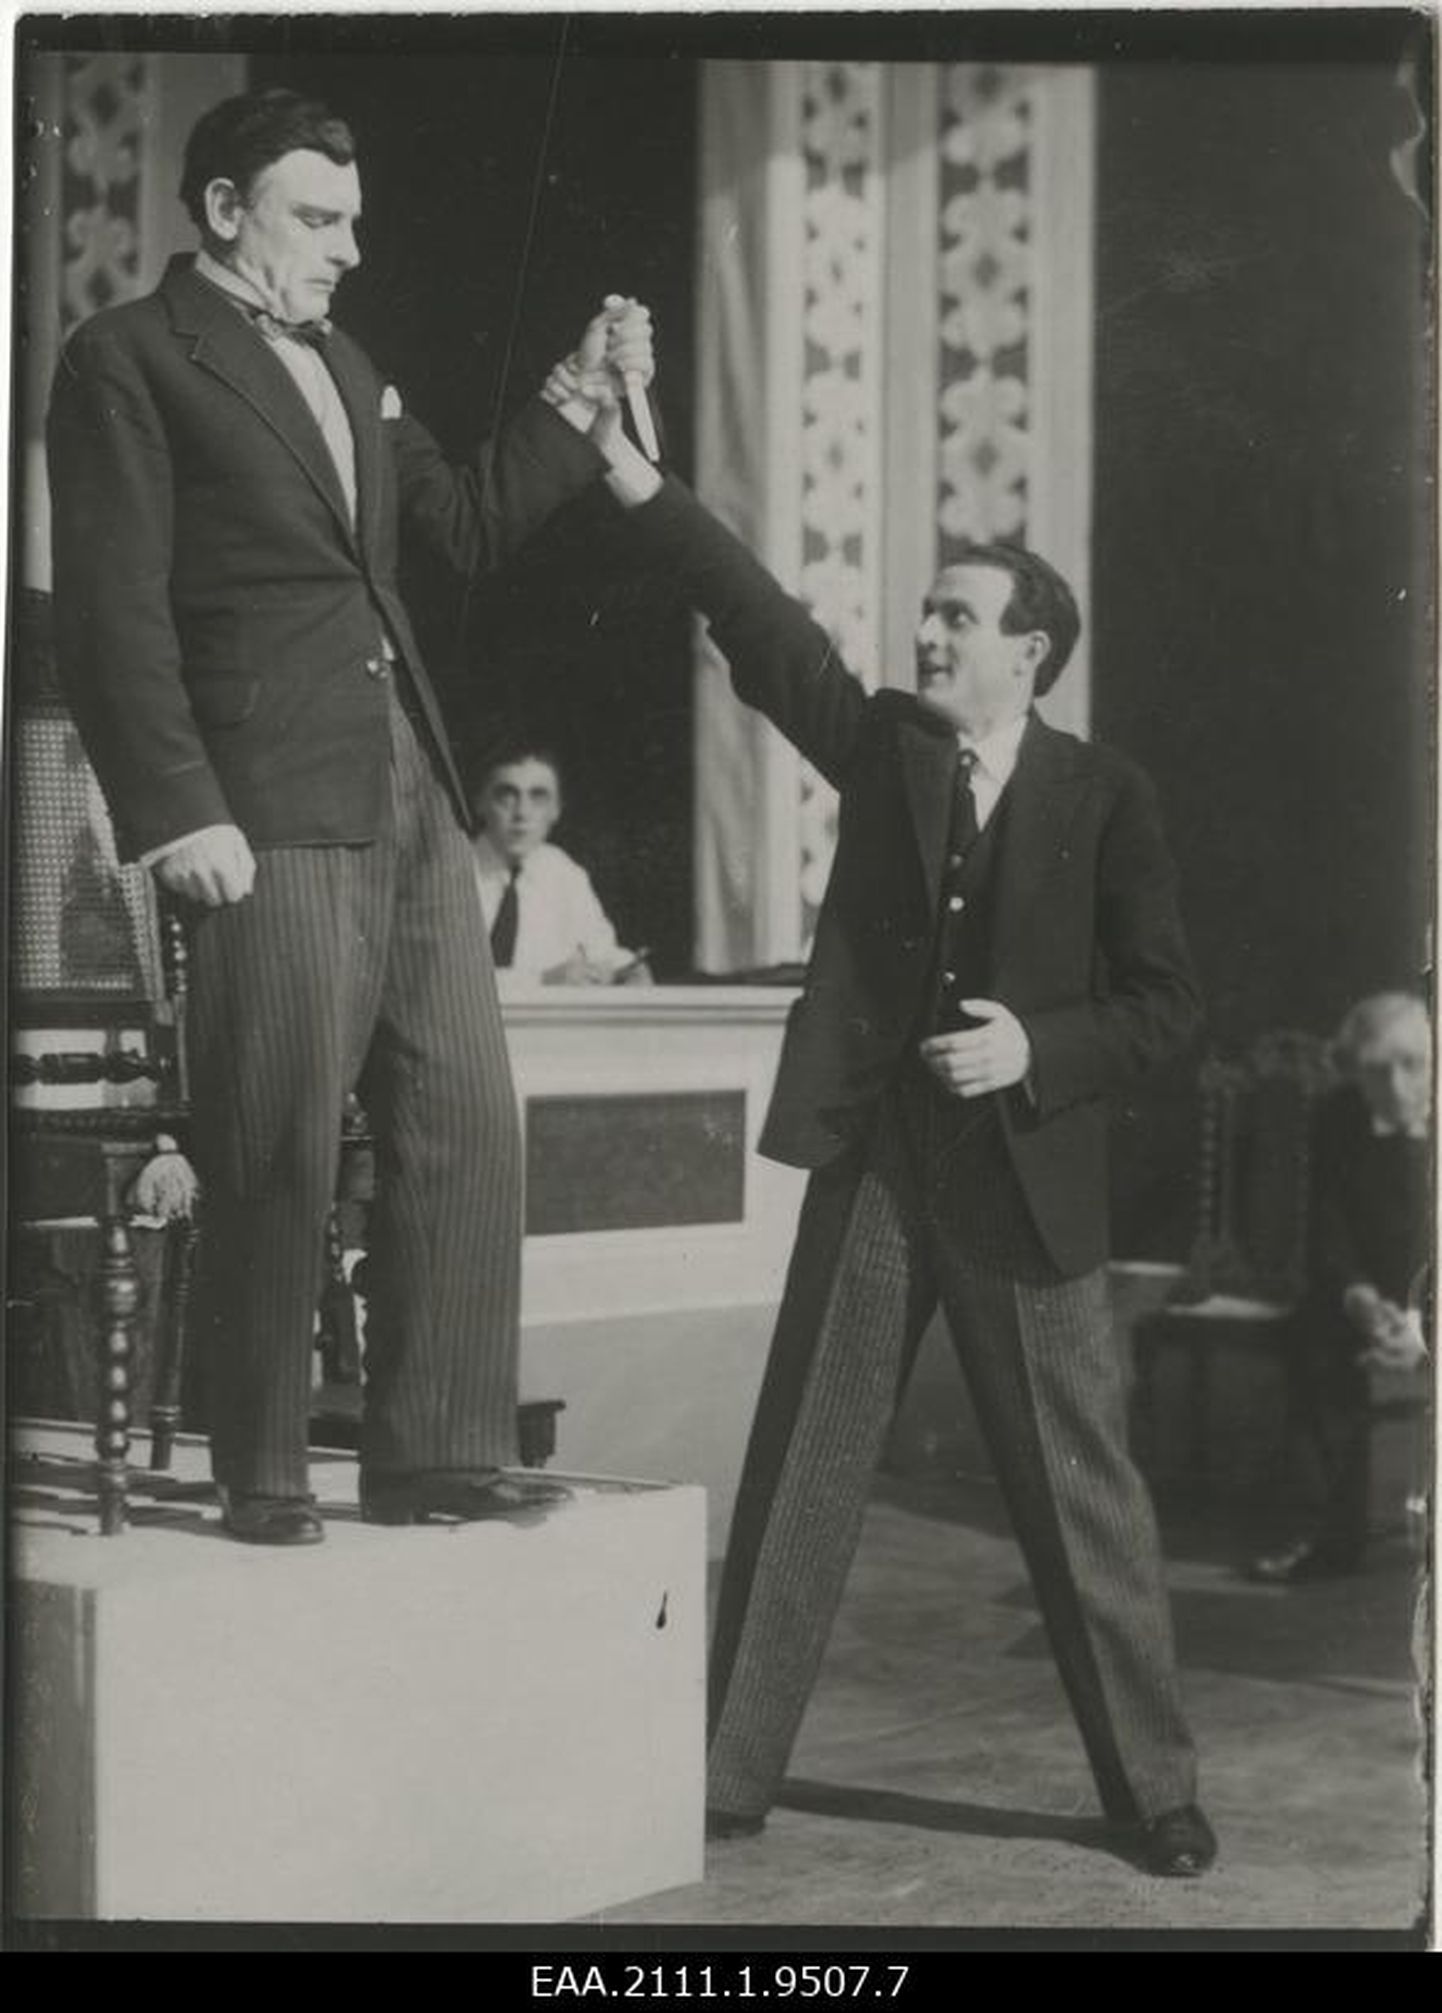 Eesti näitleja ja pedagoog, esimene raadioreporter Felix Moor näitlemas 1920ndatel. Pilt on illustratiivne.